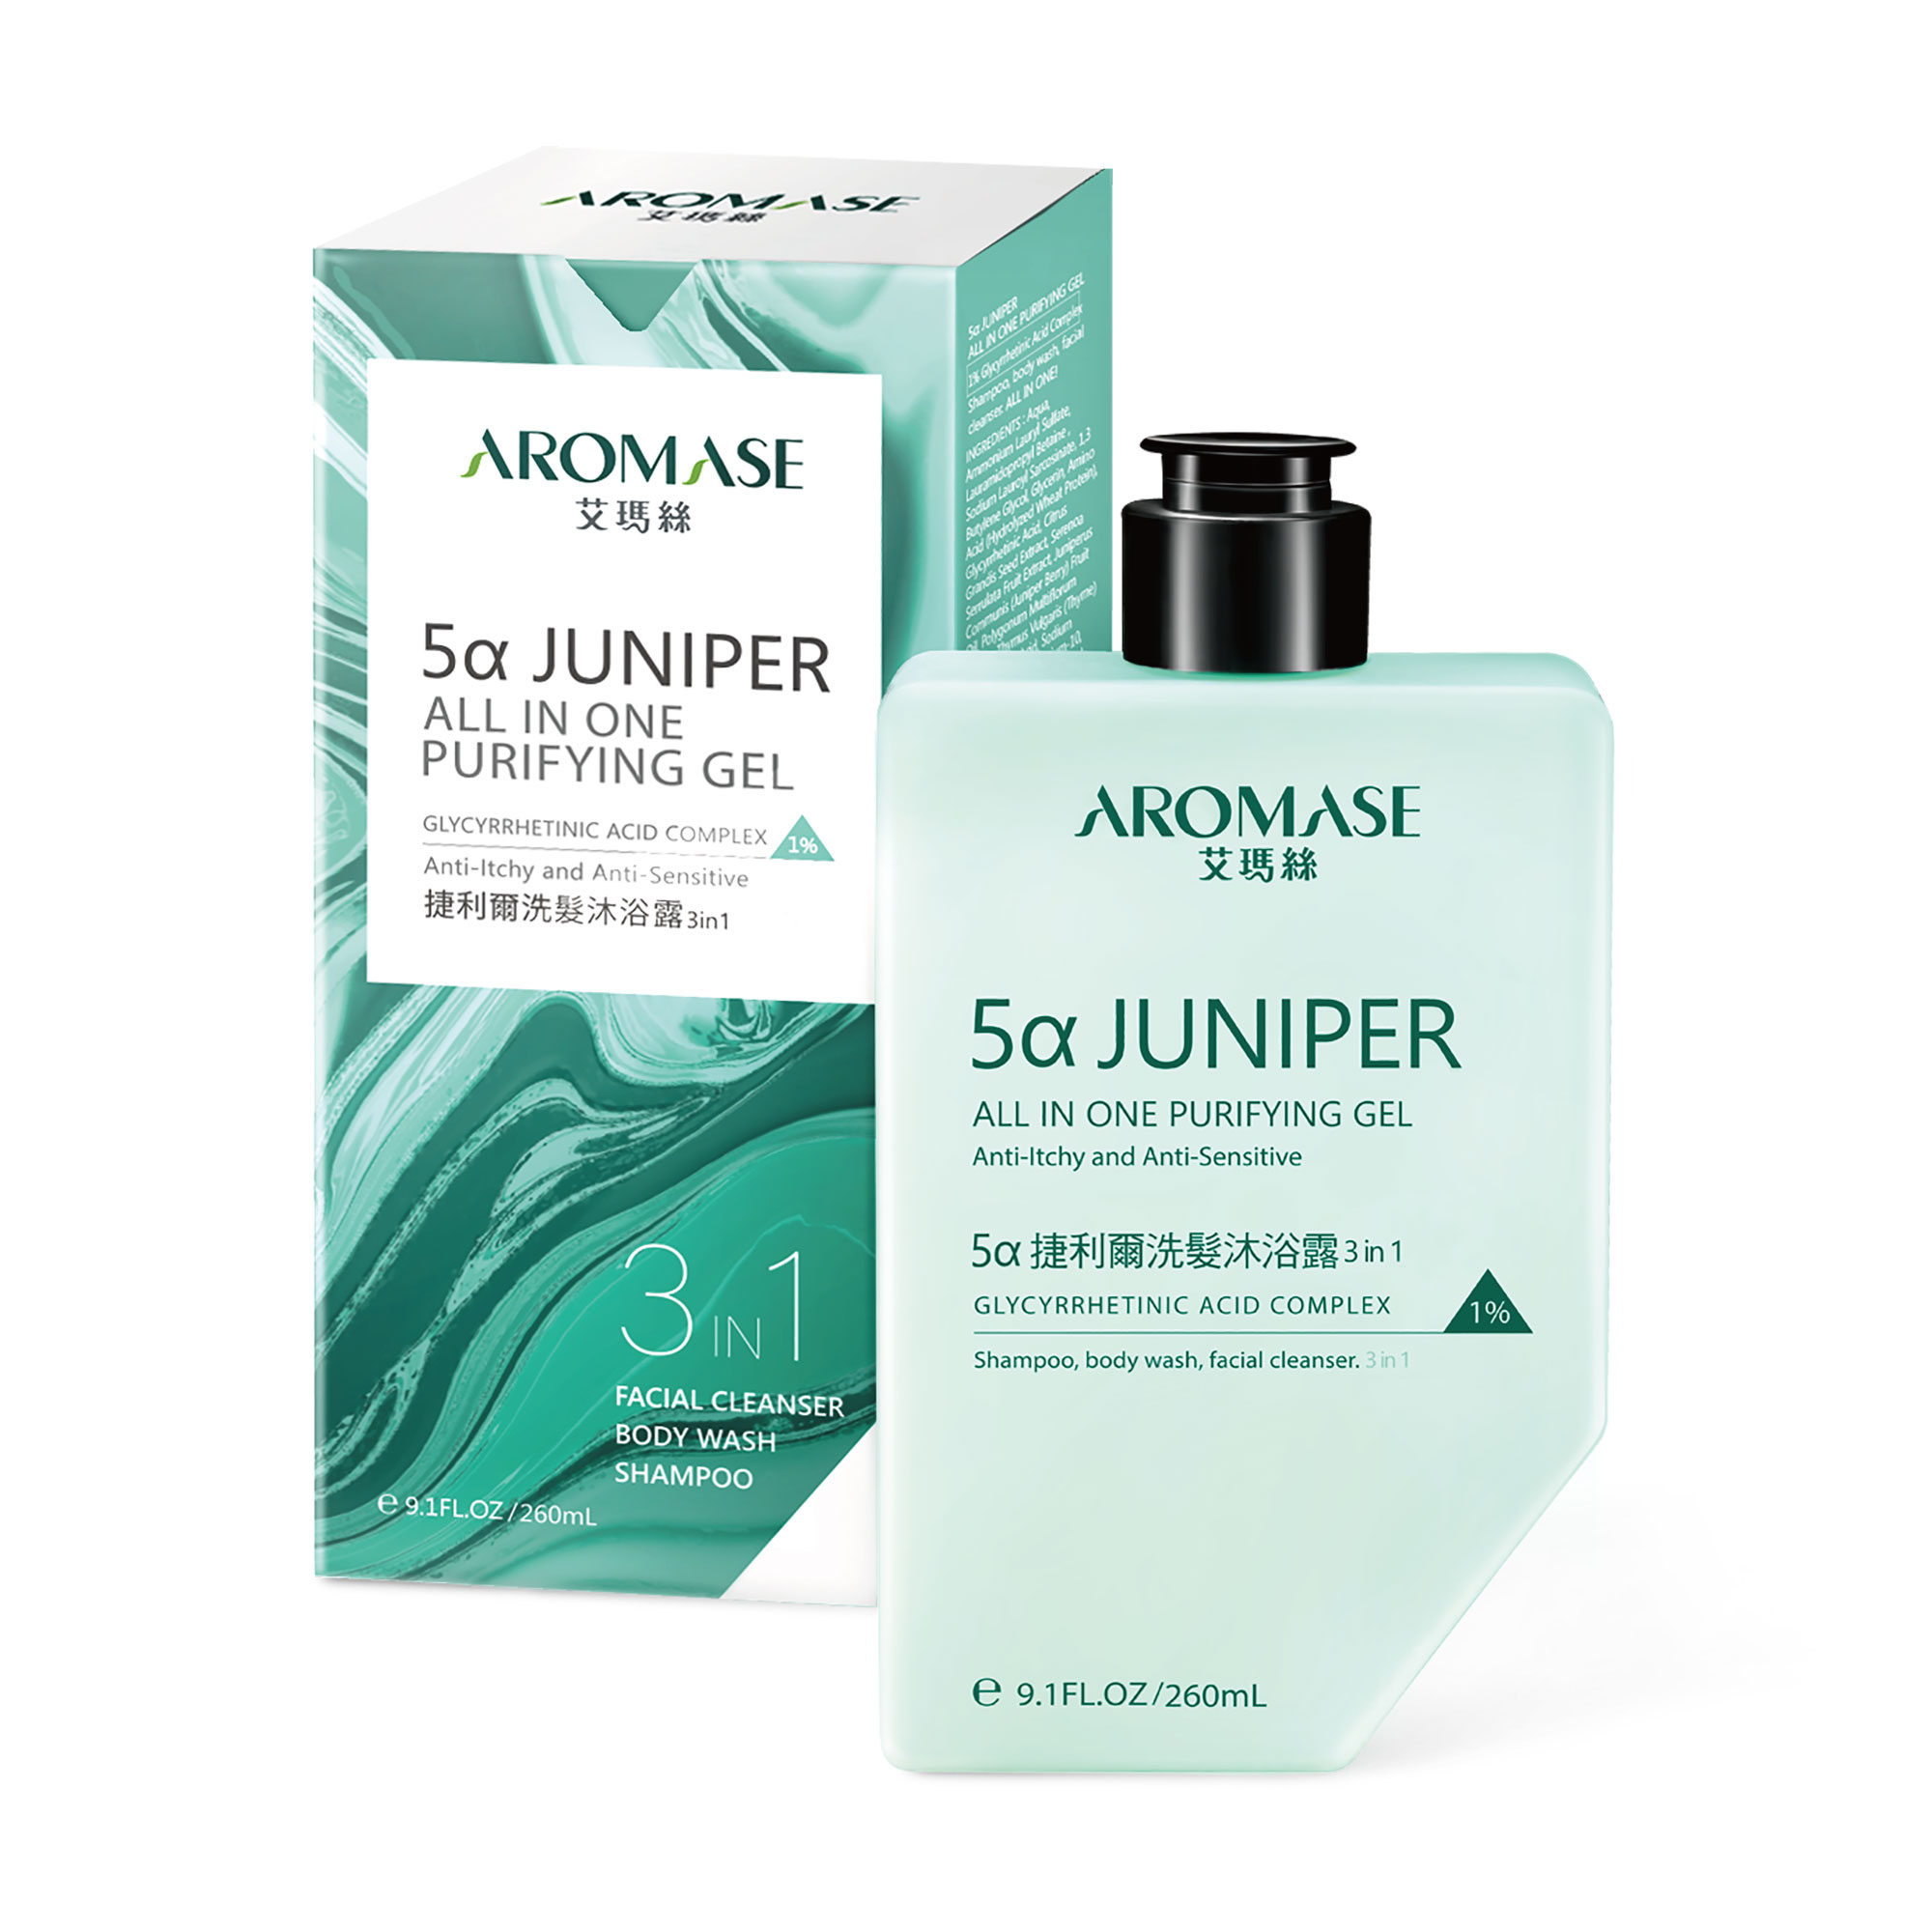 5α Juniper Head-To-Toe Shampoo & Body Wash ( for Face, Body & Scalp) / MacroHI co., Ltd.